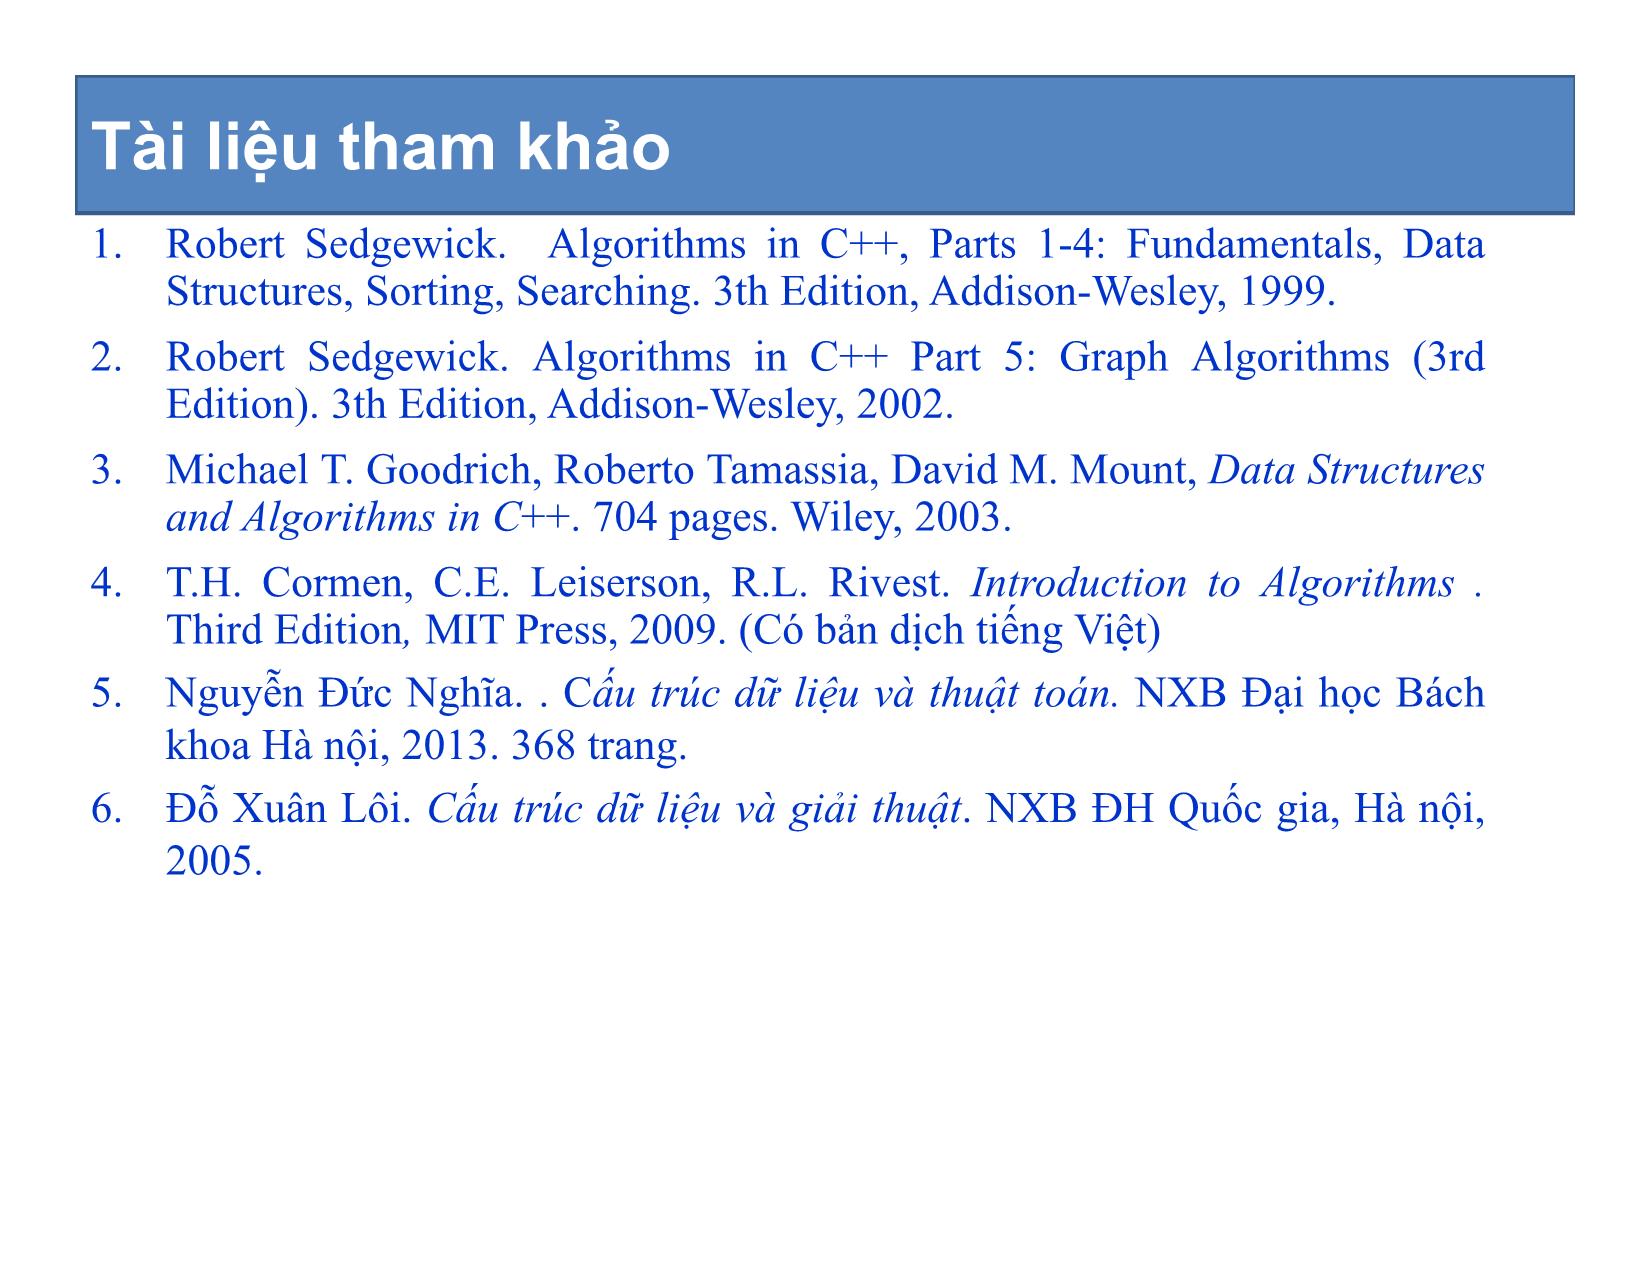 Bài giảng Cấu trúc dữ liệu và thuật toán - Chương mở đầu: Giới thiệu môn học - Nguyễn Khánh Phương trang 4